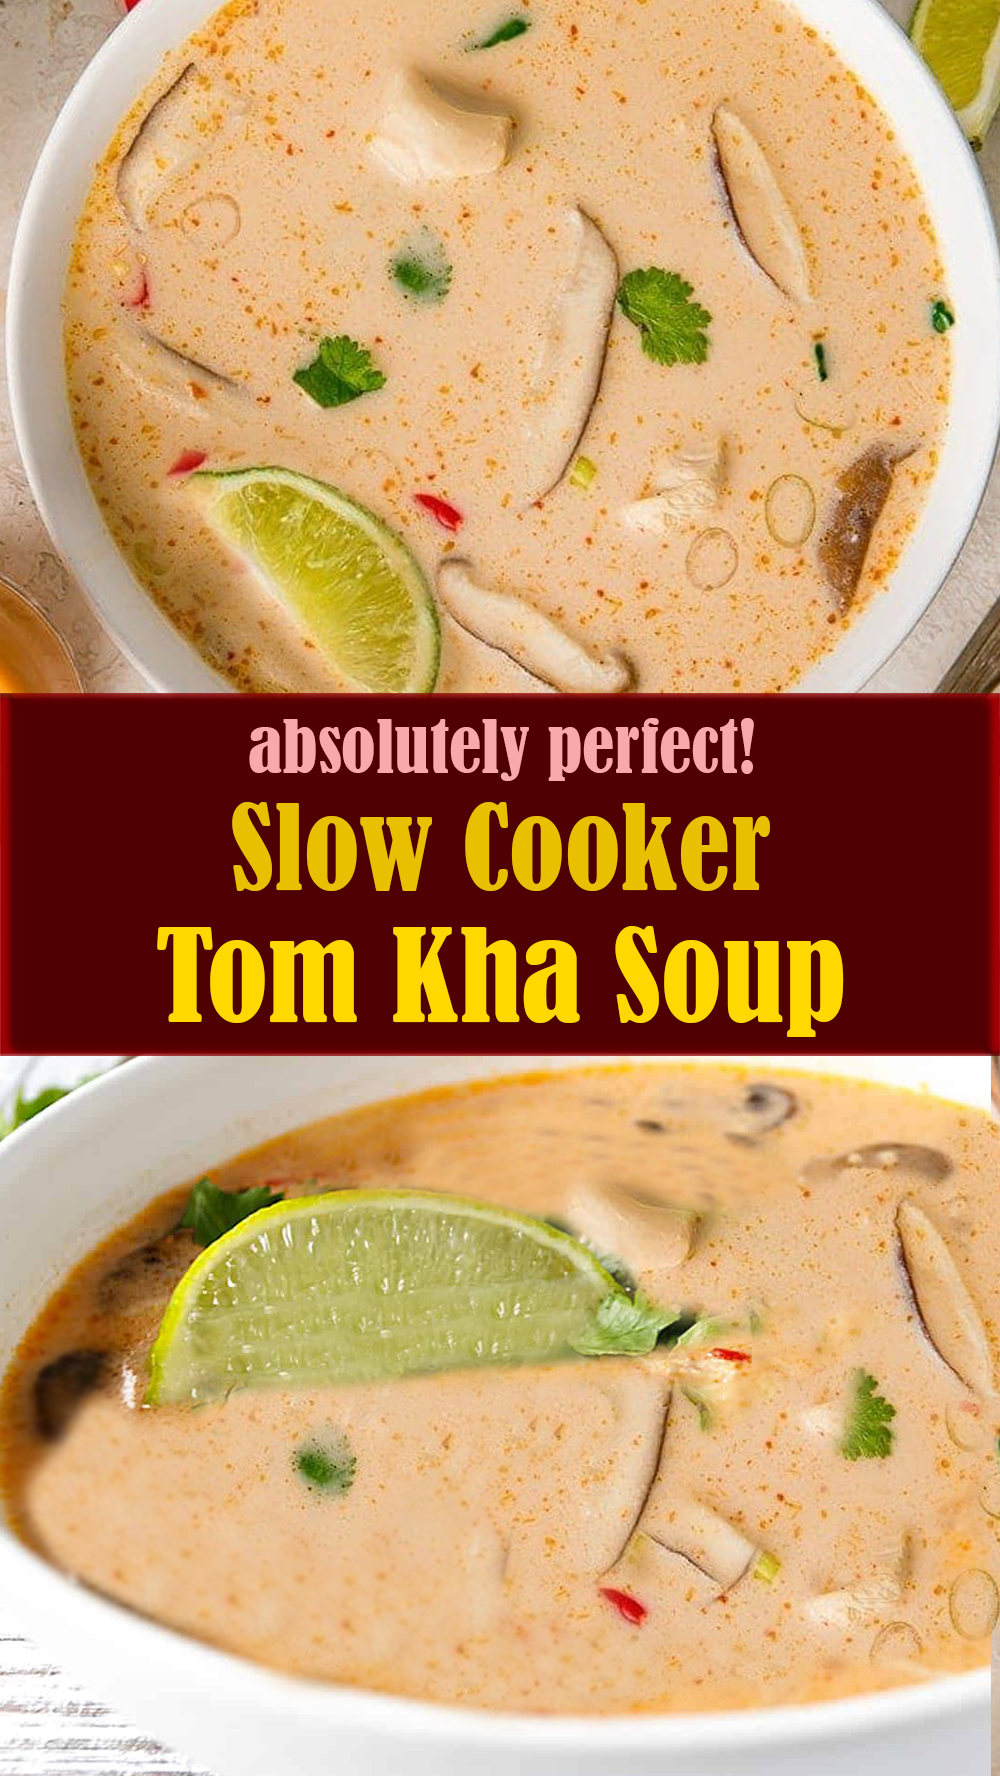 Slow Cooker Tom Kha Soup